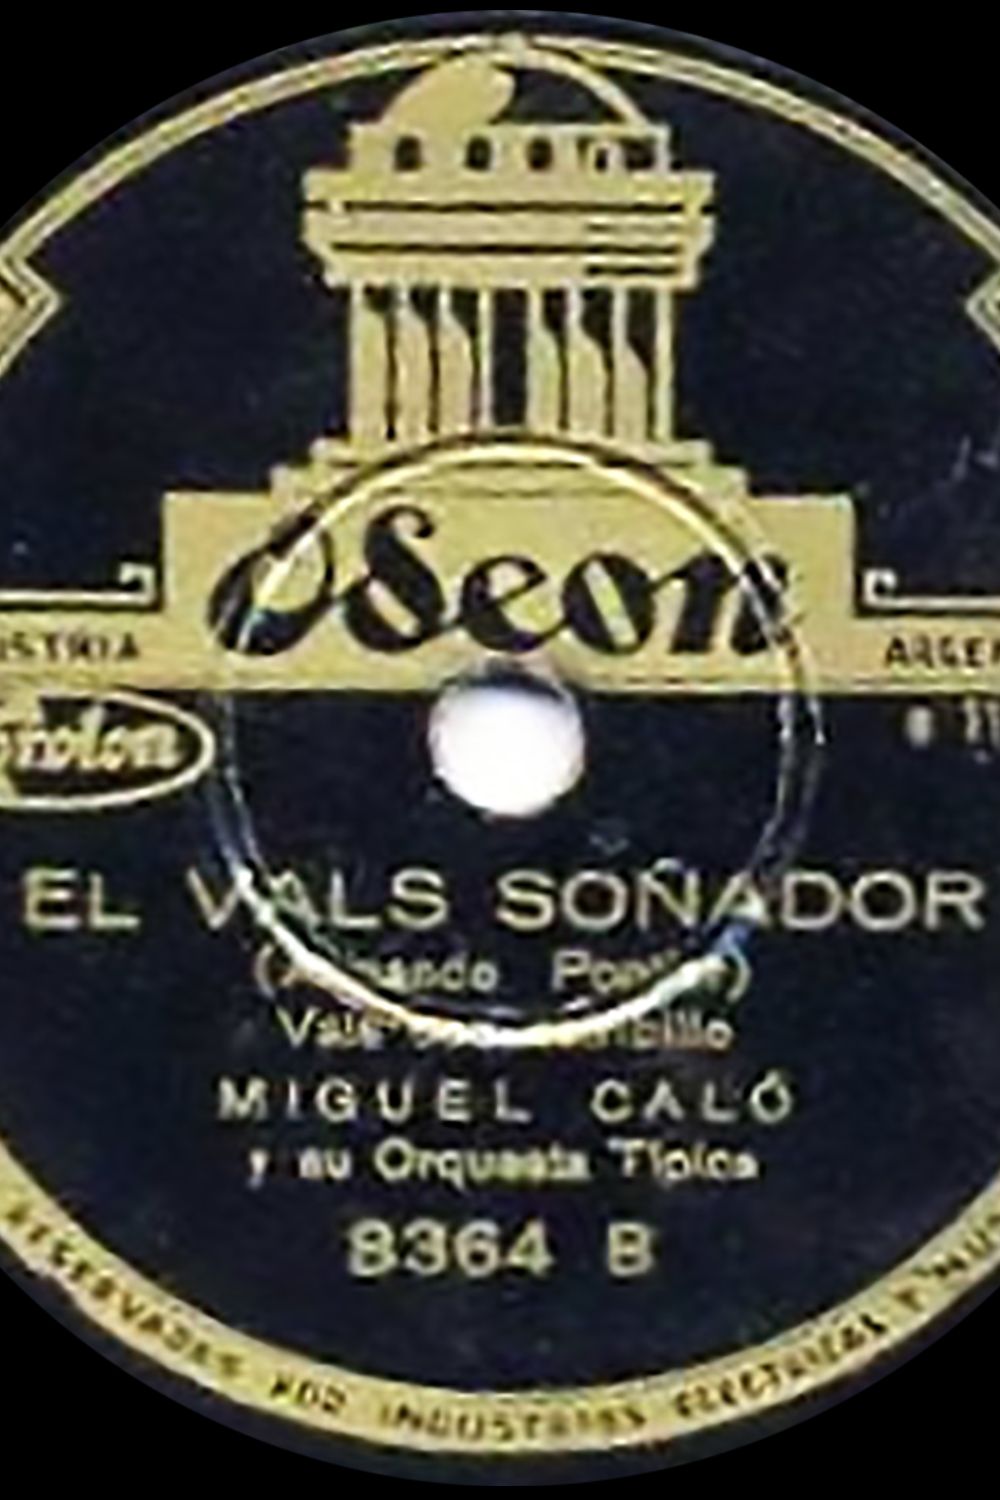 "El vals soñador", Argentine tango vinyl disc.